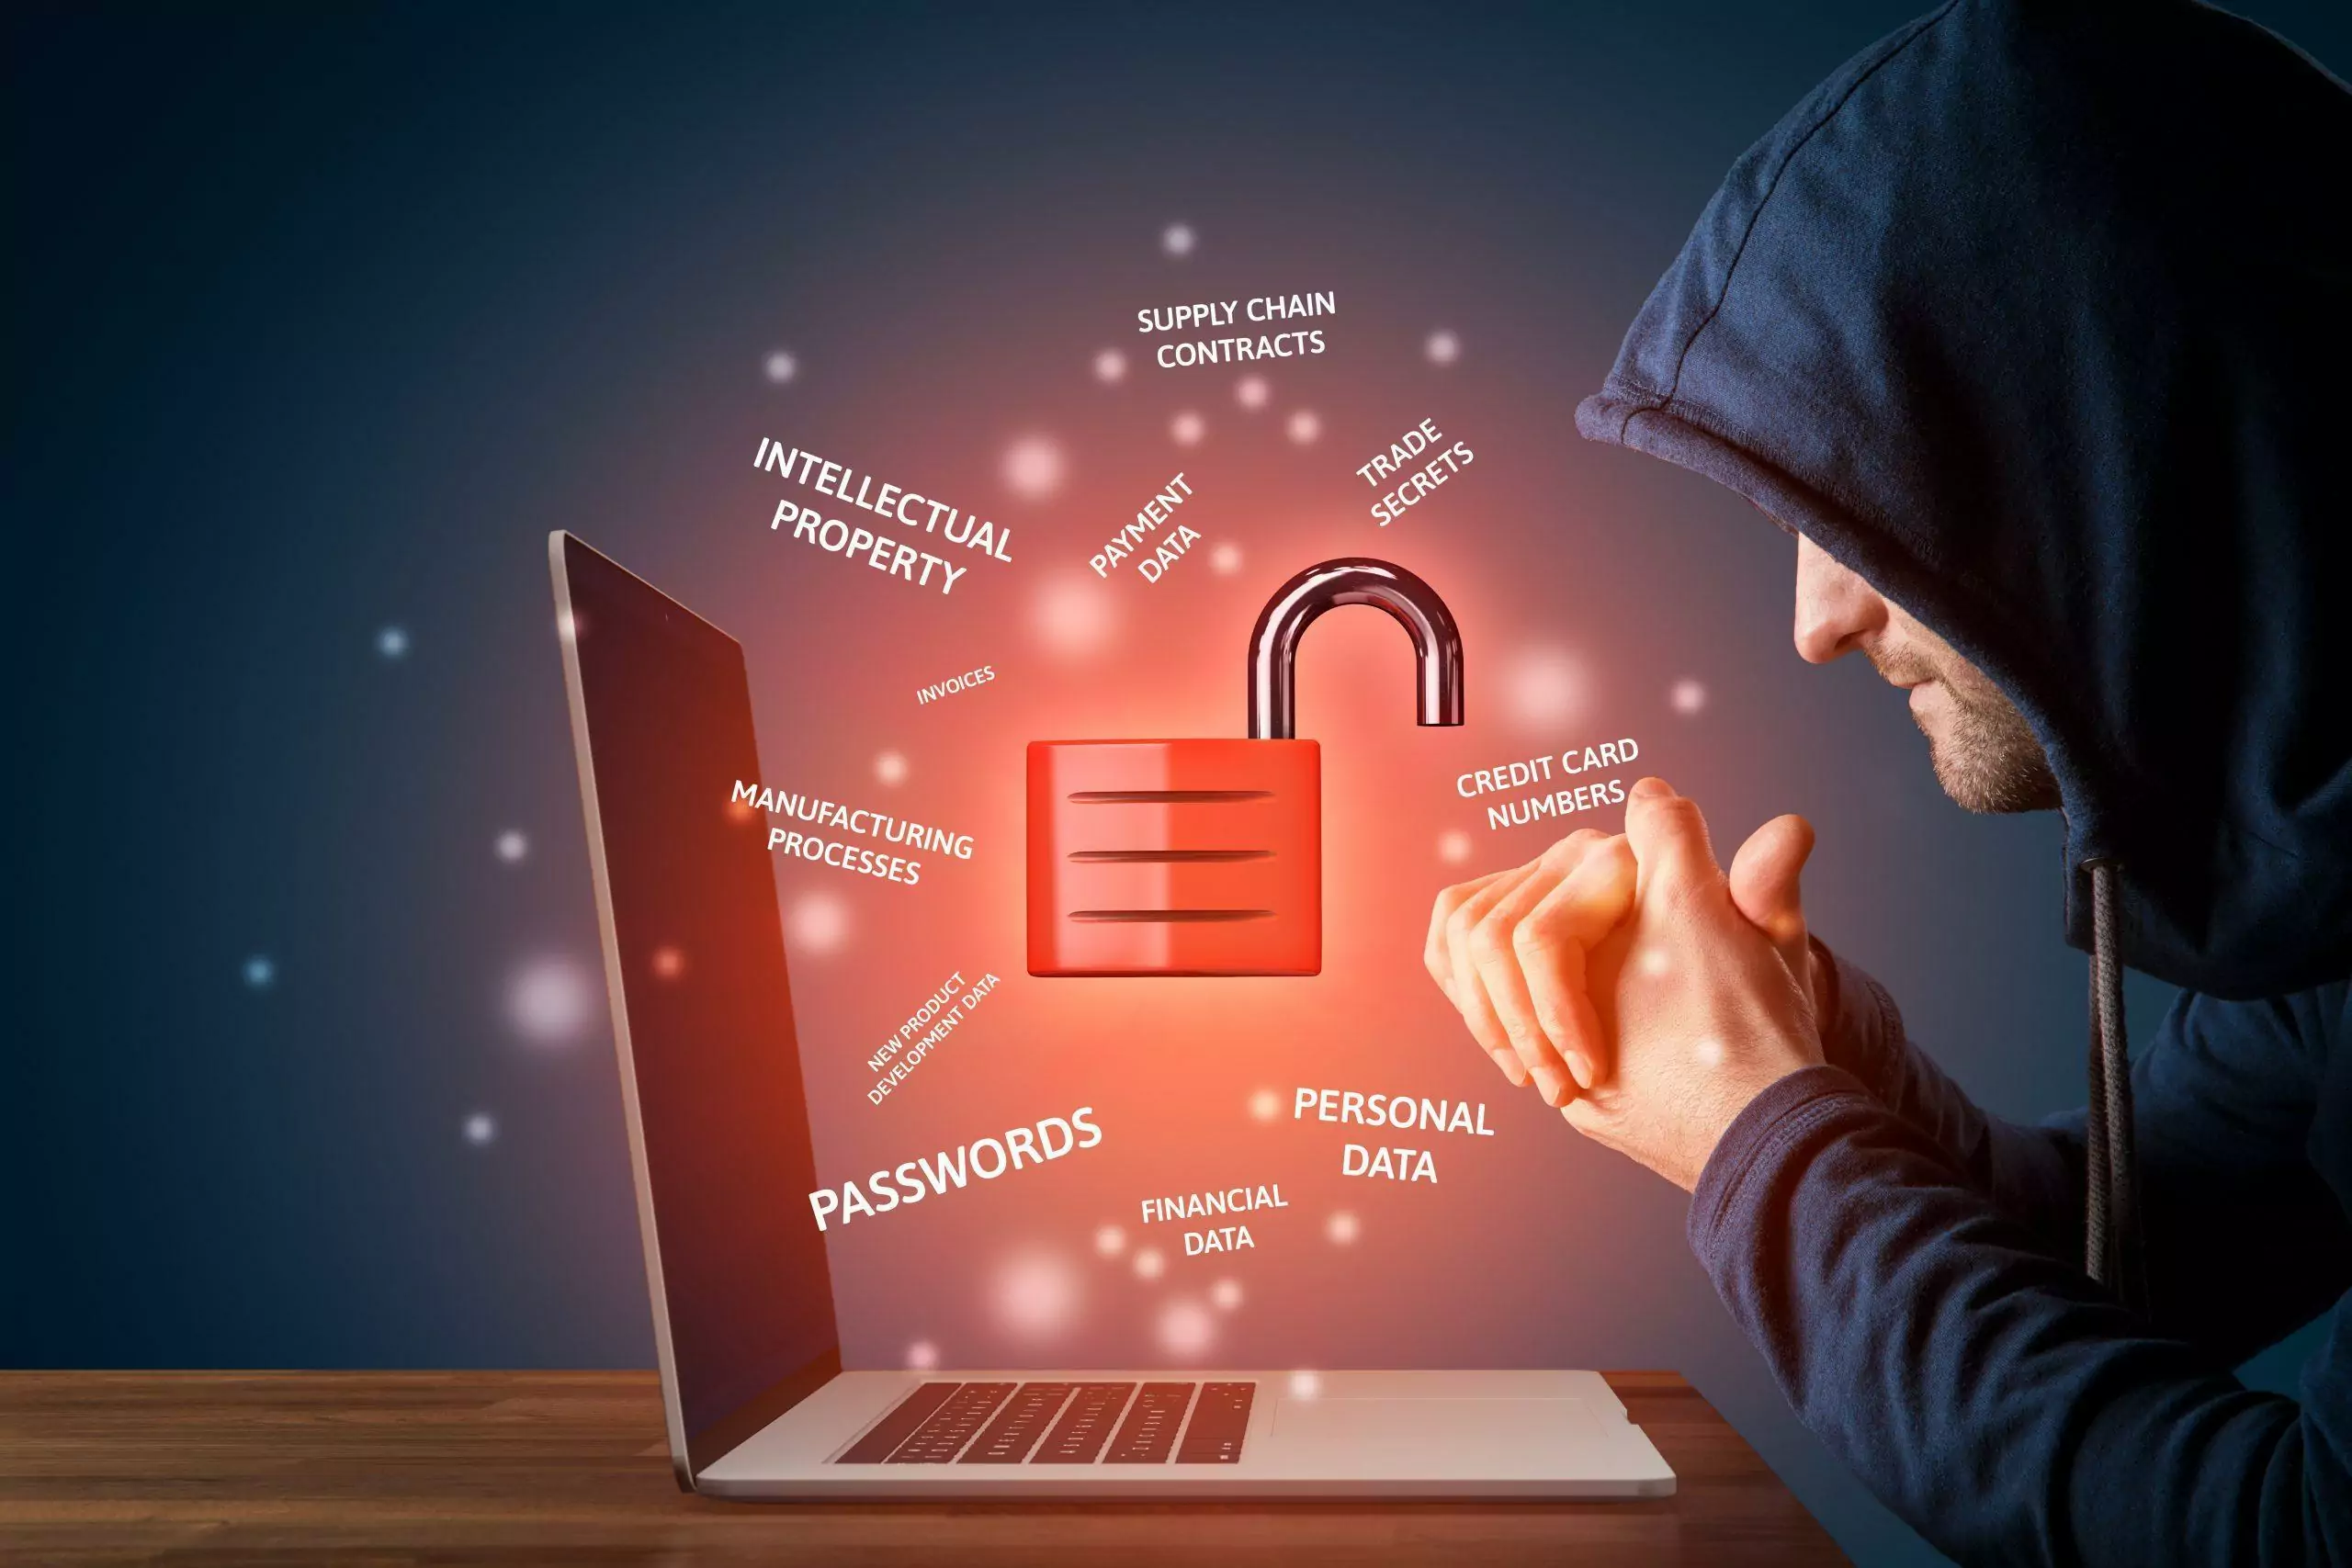 visuel d'un hacker devant un ordinateur au dessus duquel sont écrit différents mots sur la cyber sécurité avec le dessin d'un cadenas ouvert